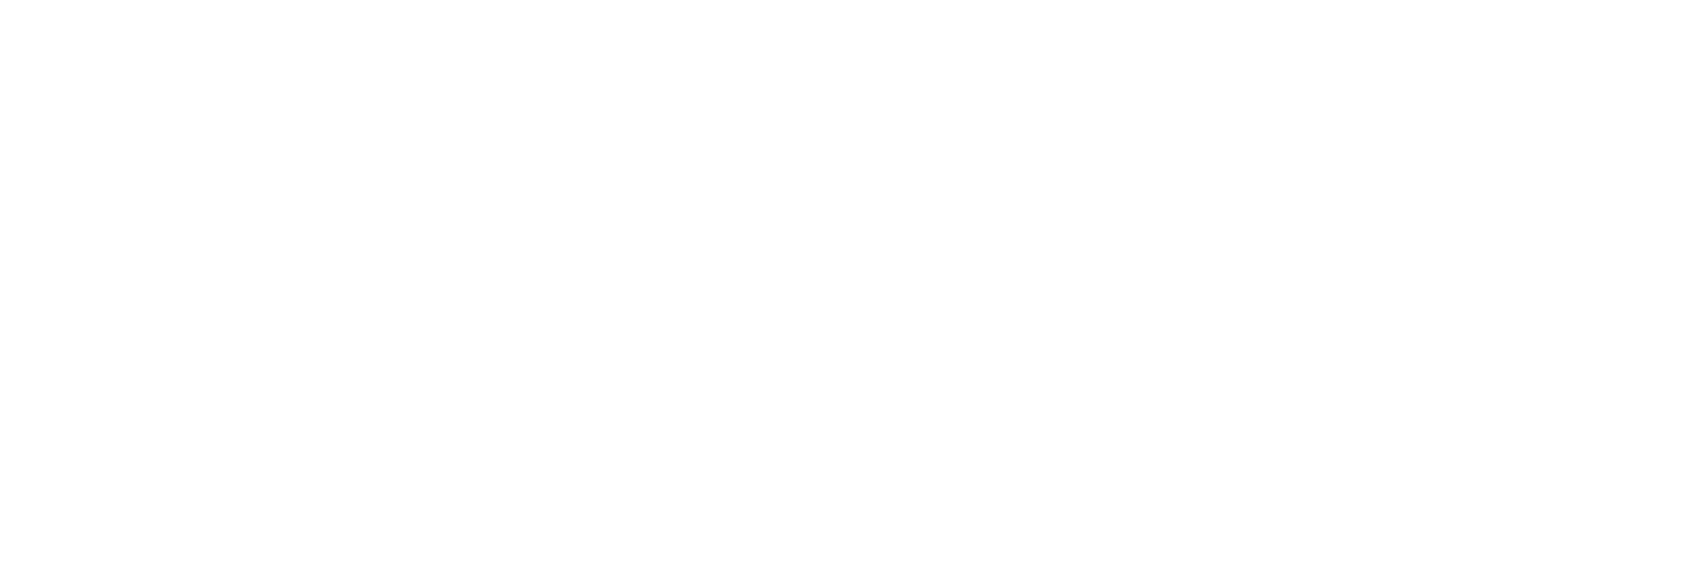 Erasmus+ With Baseline Neg All Lang En